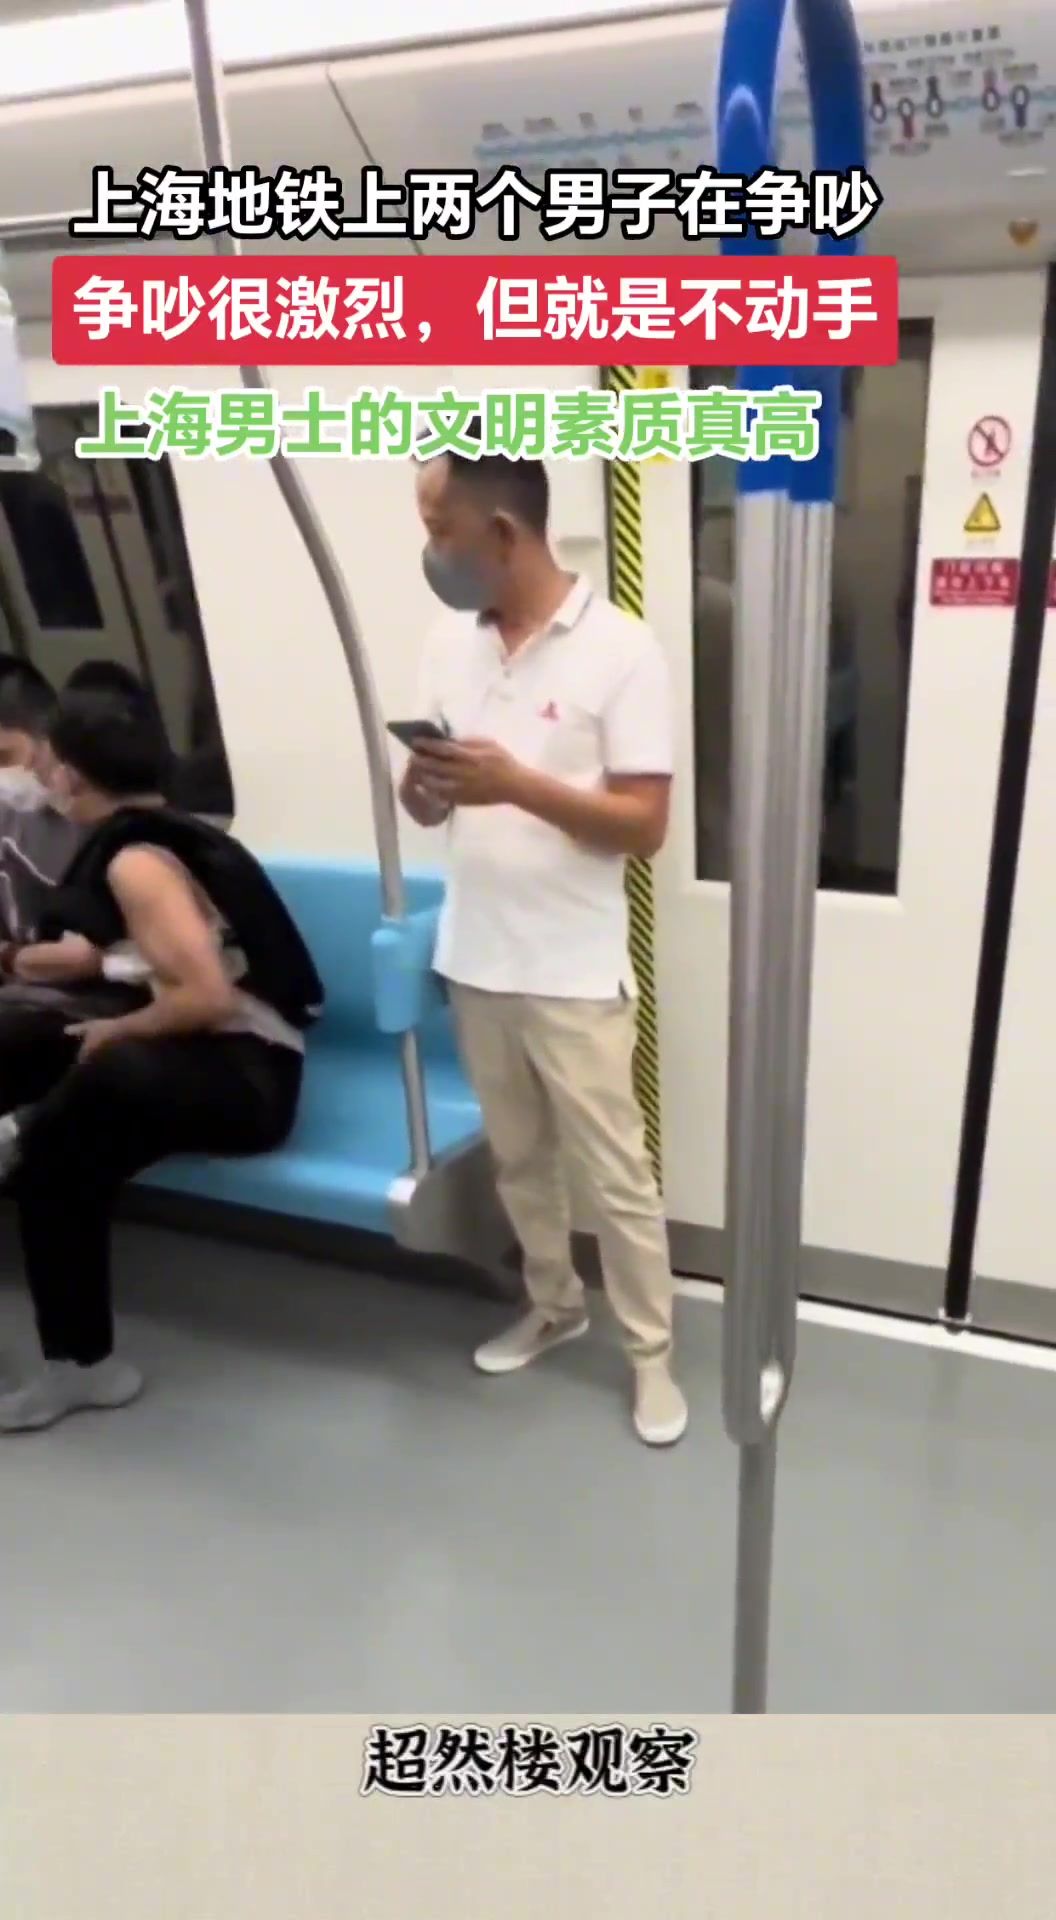 上海地铁上两个男子在争吵 虽吵得很凶但就是不动手